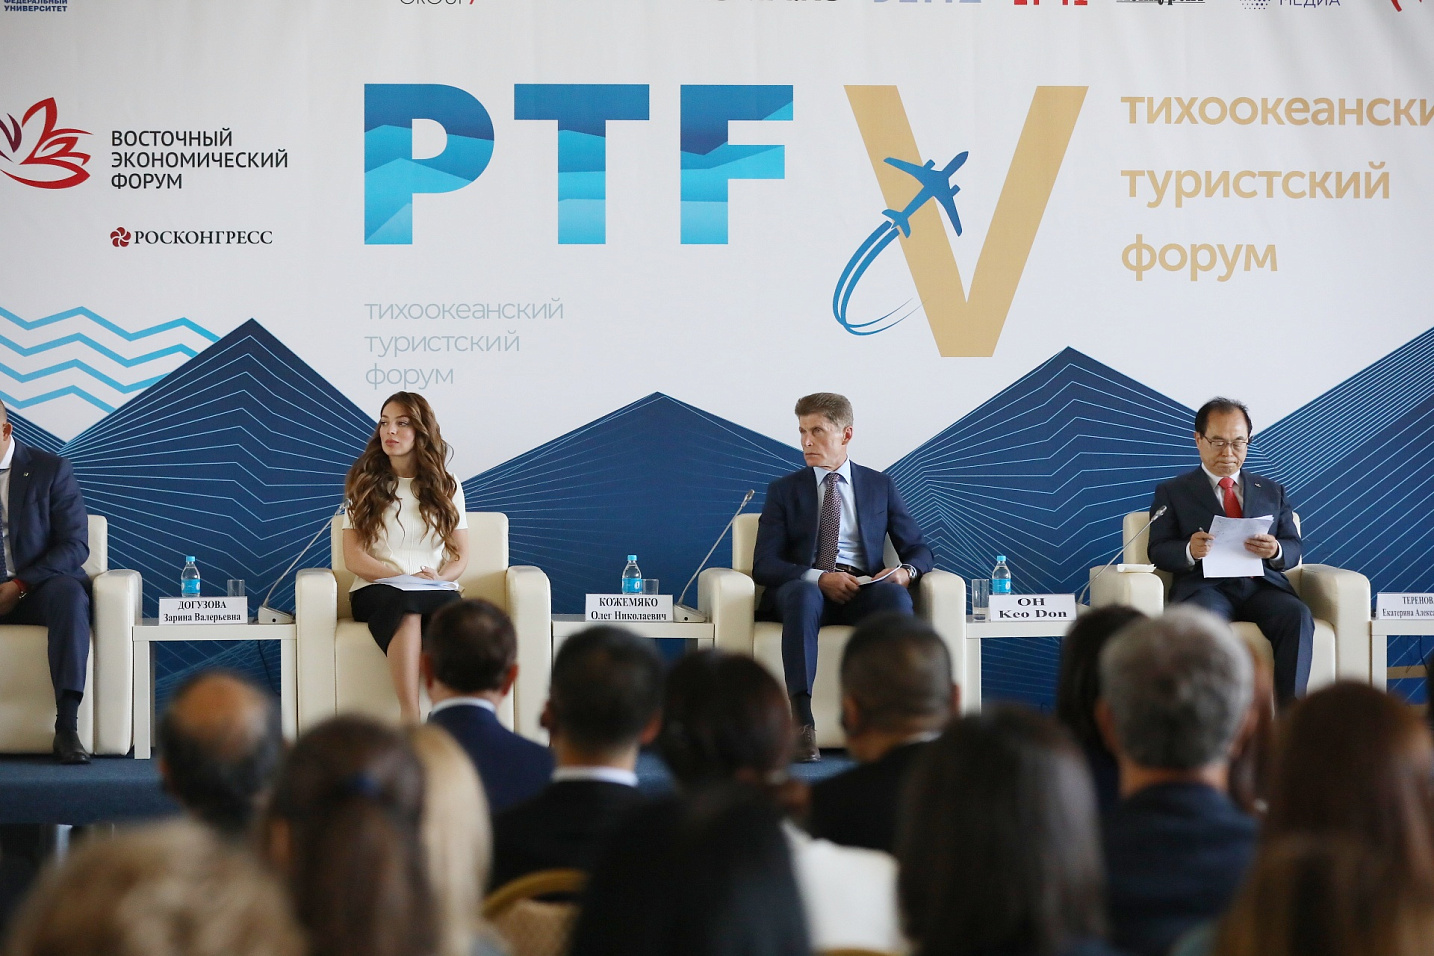 Развитие туристической отрасли Дальнего Востока обсудили на выездной сессии ВЭФ-2019 во Владивостоке